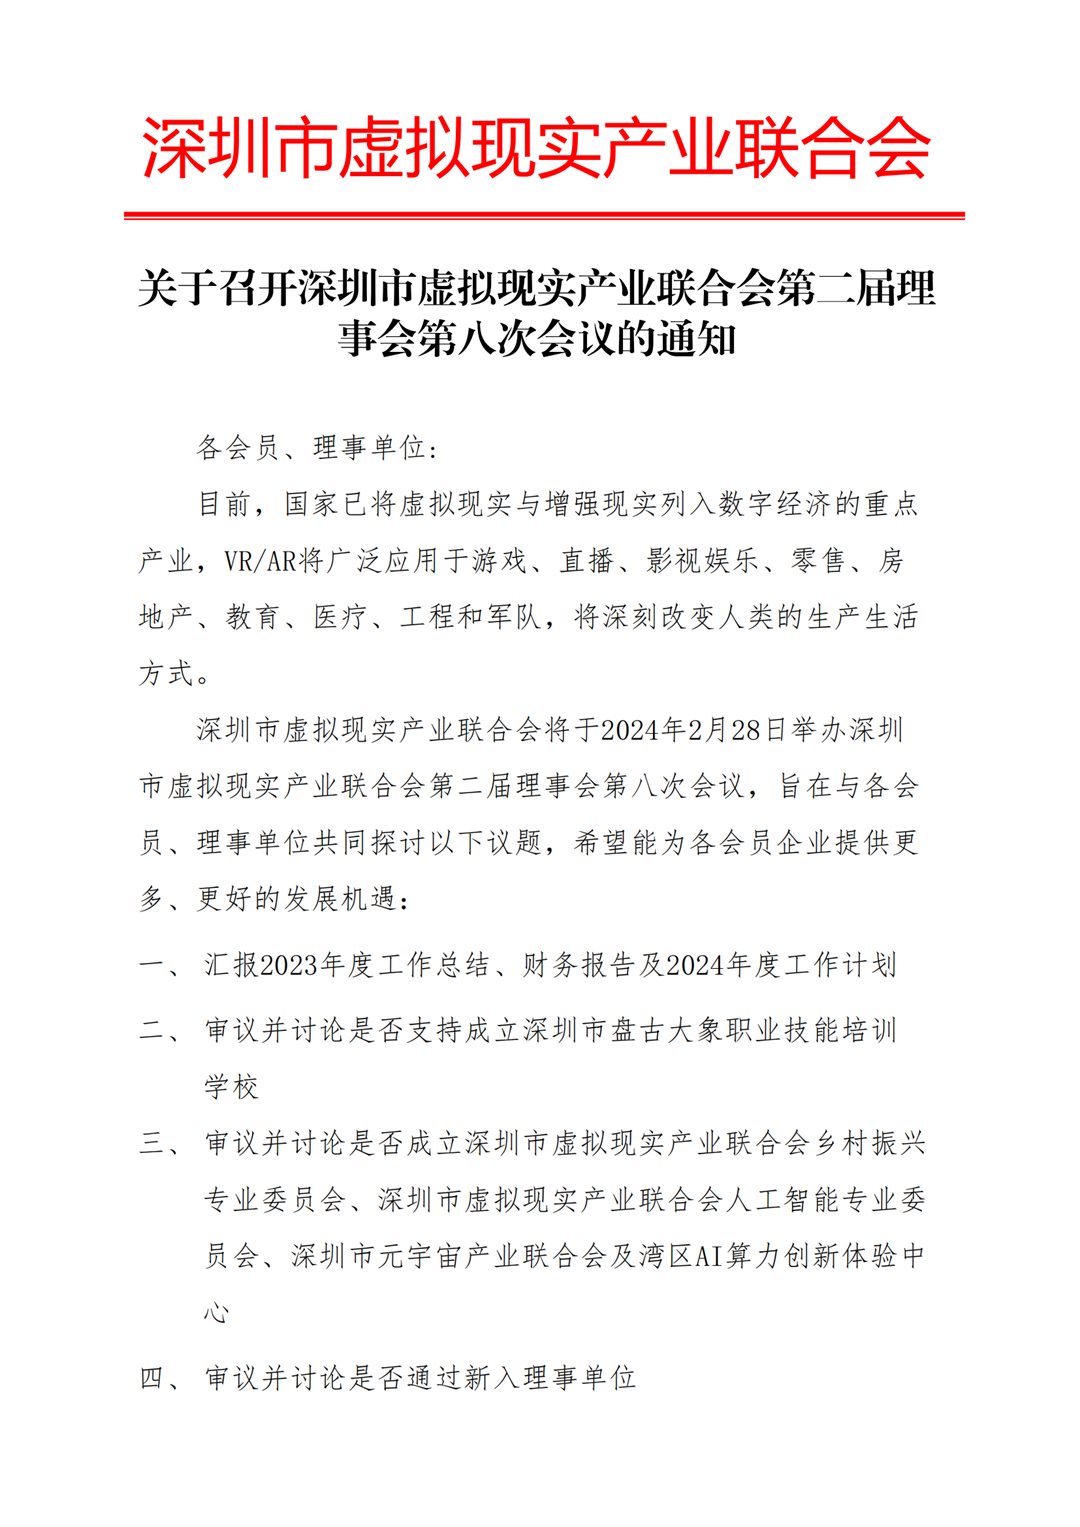 关于召开深圳市虚拟现实产业联合会第二届理事会第八次会议的通知_20240223165326_00.png